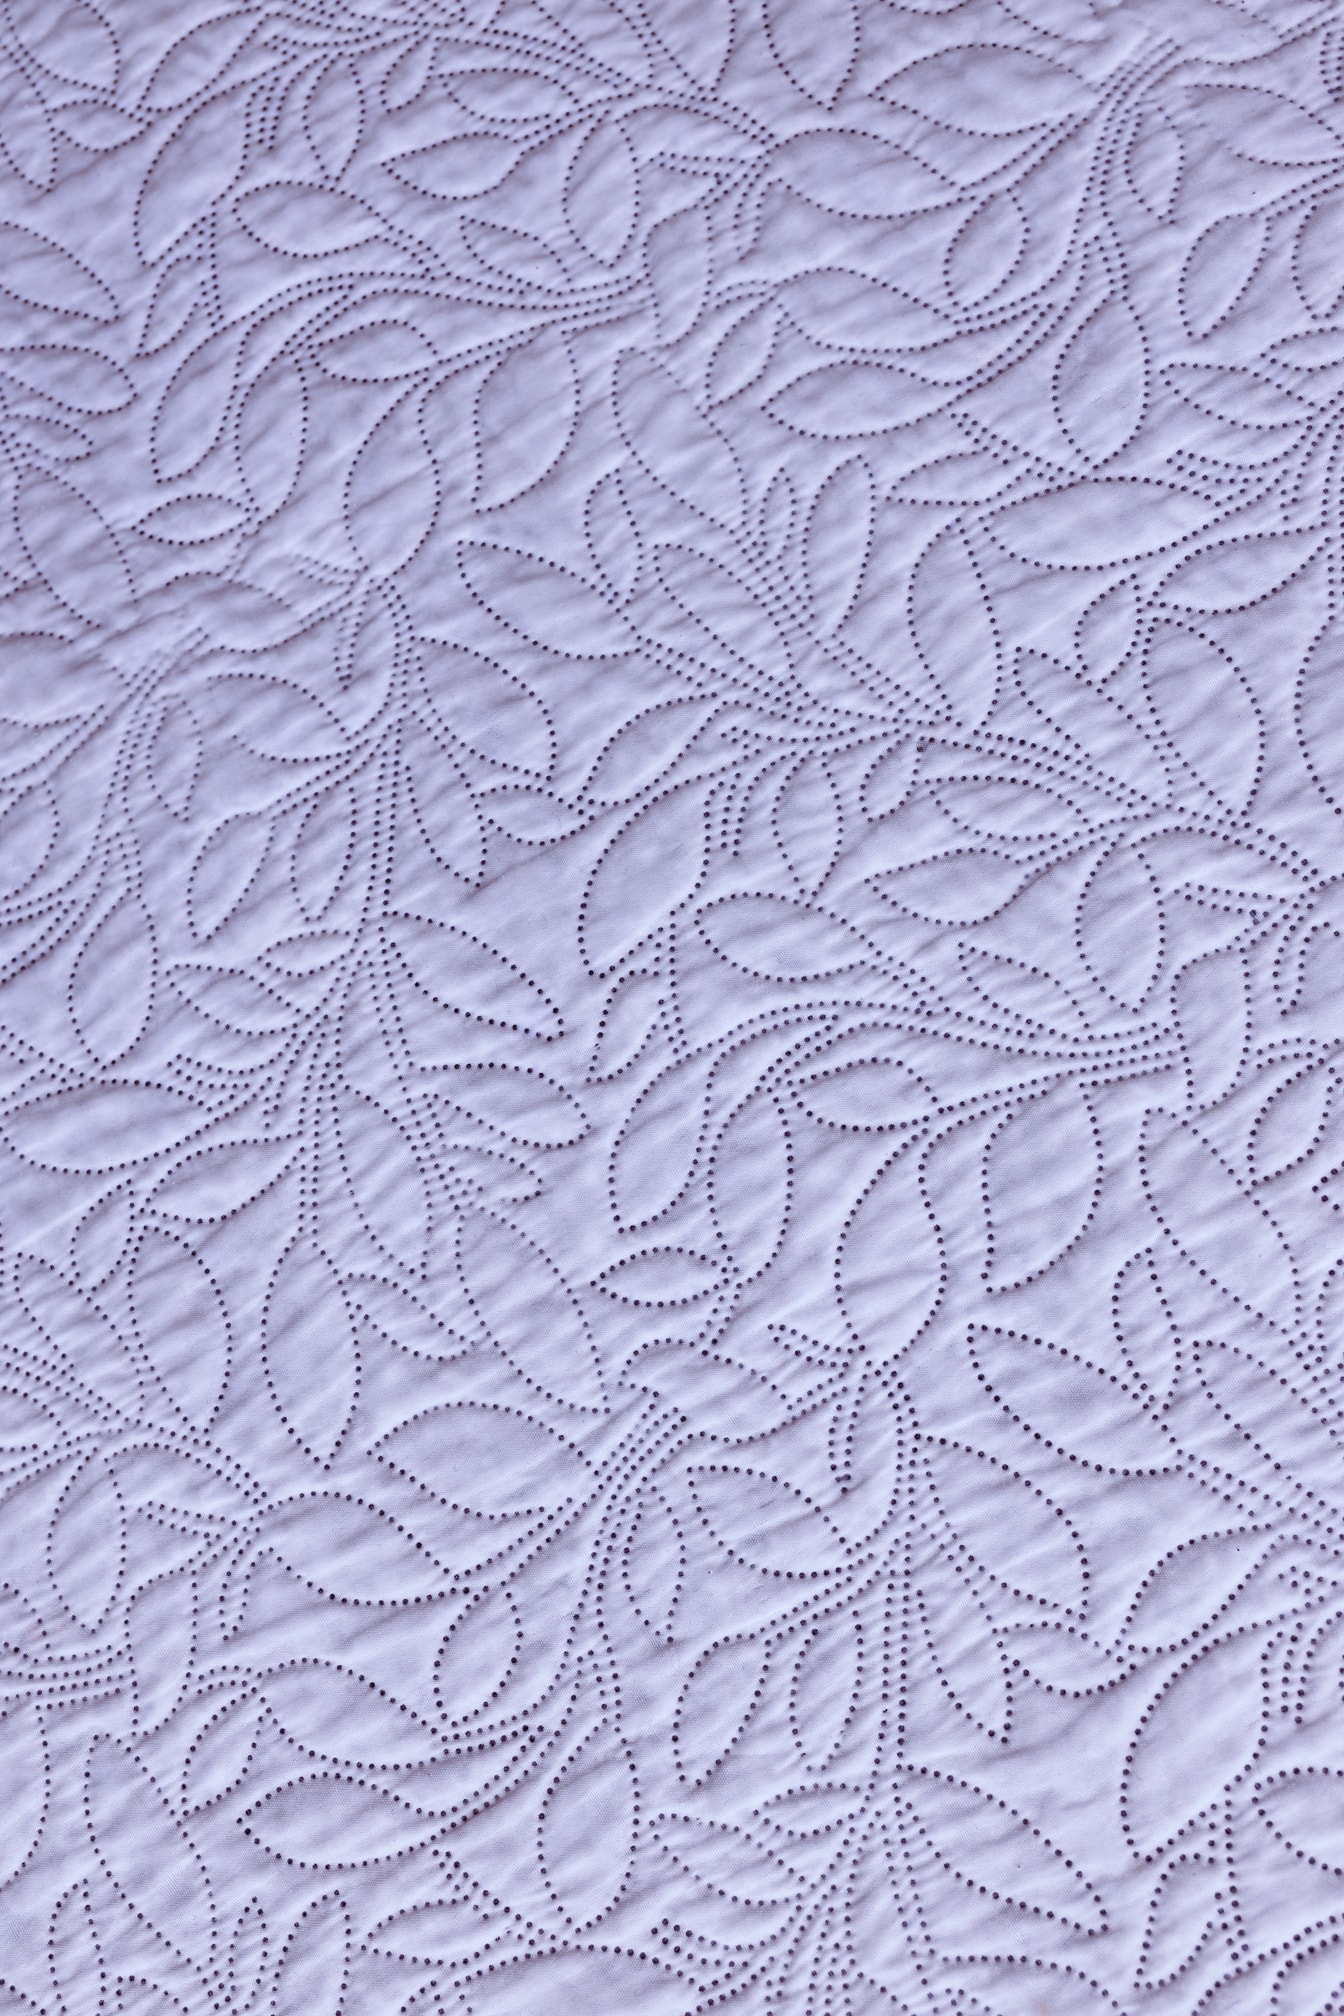 Λευκό βαμβακερό δαμασκηνό ύφασμα με διακοσμητική διακόσμηση ραψίματος